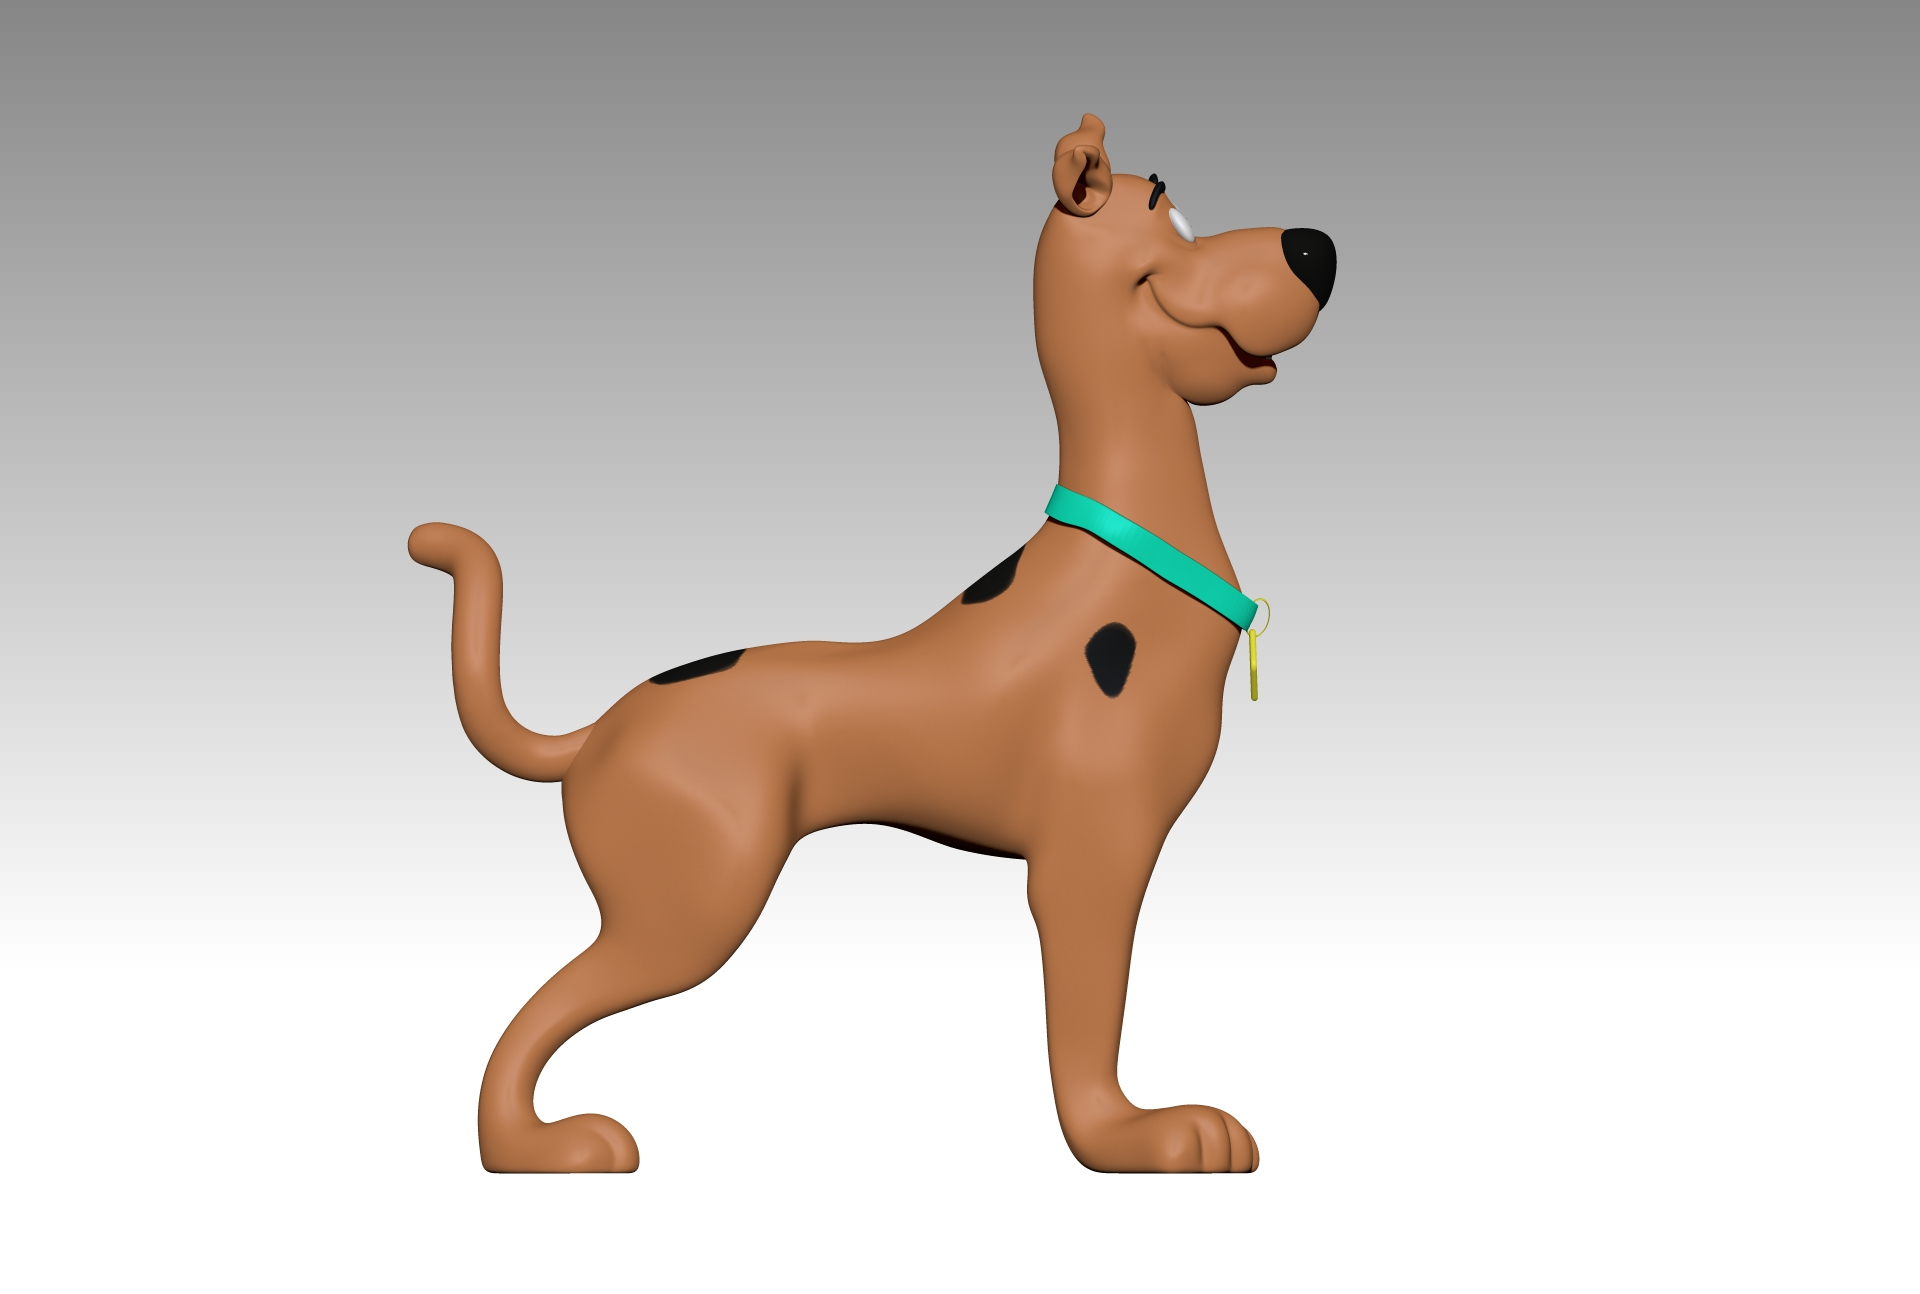 Scooby Doo Standing 3d Model Turbosquid 1691702